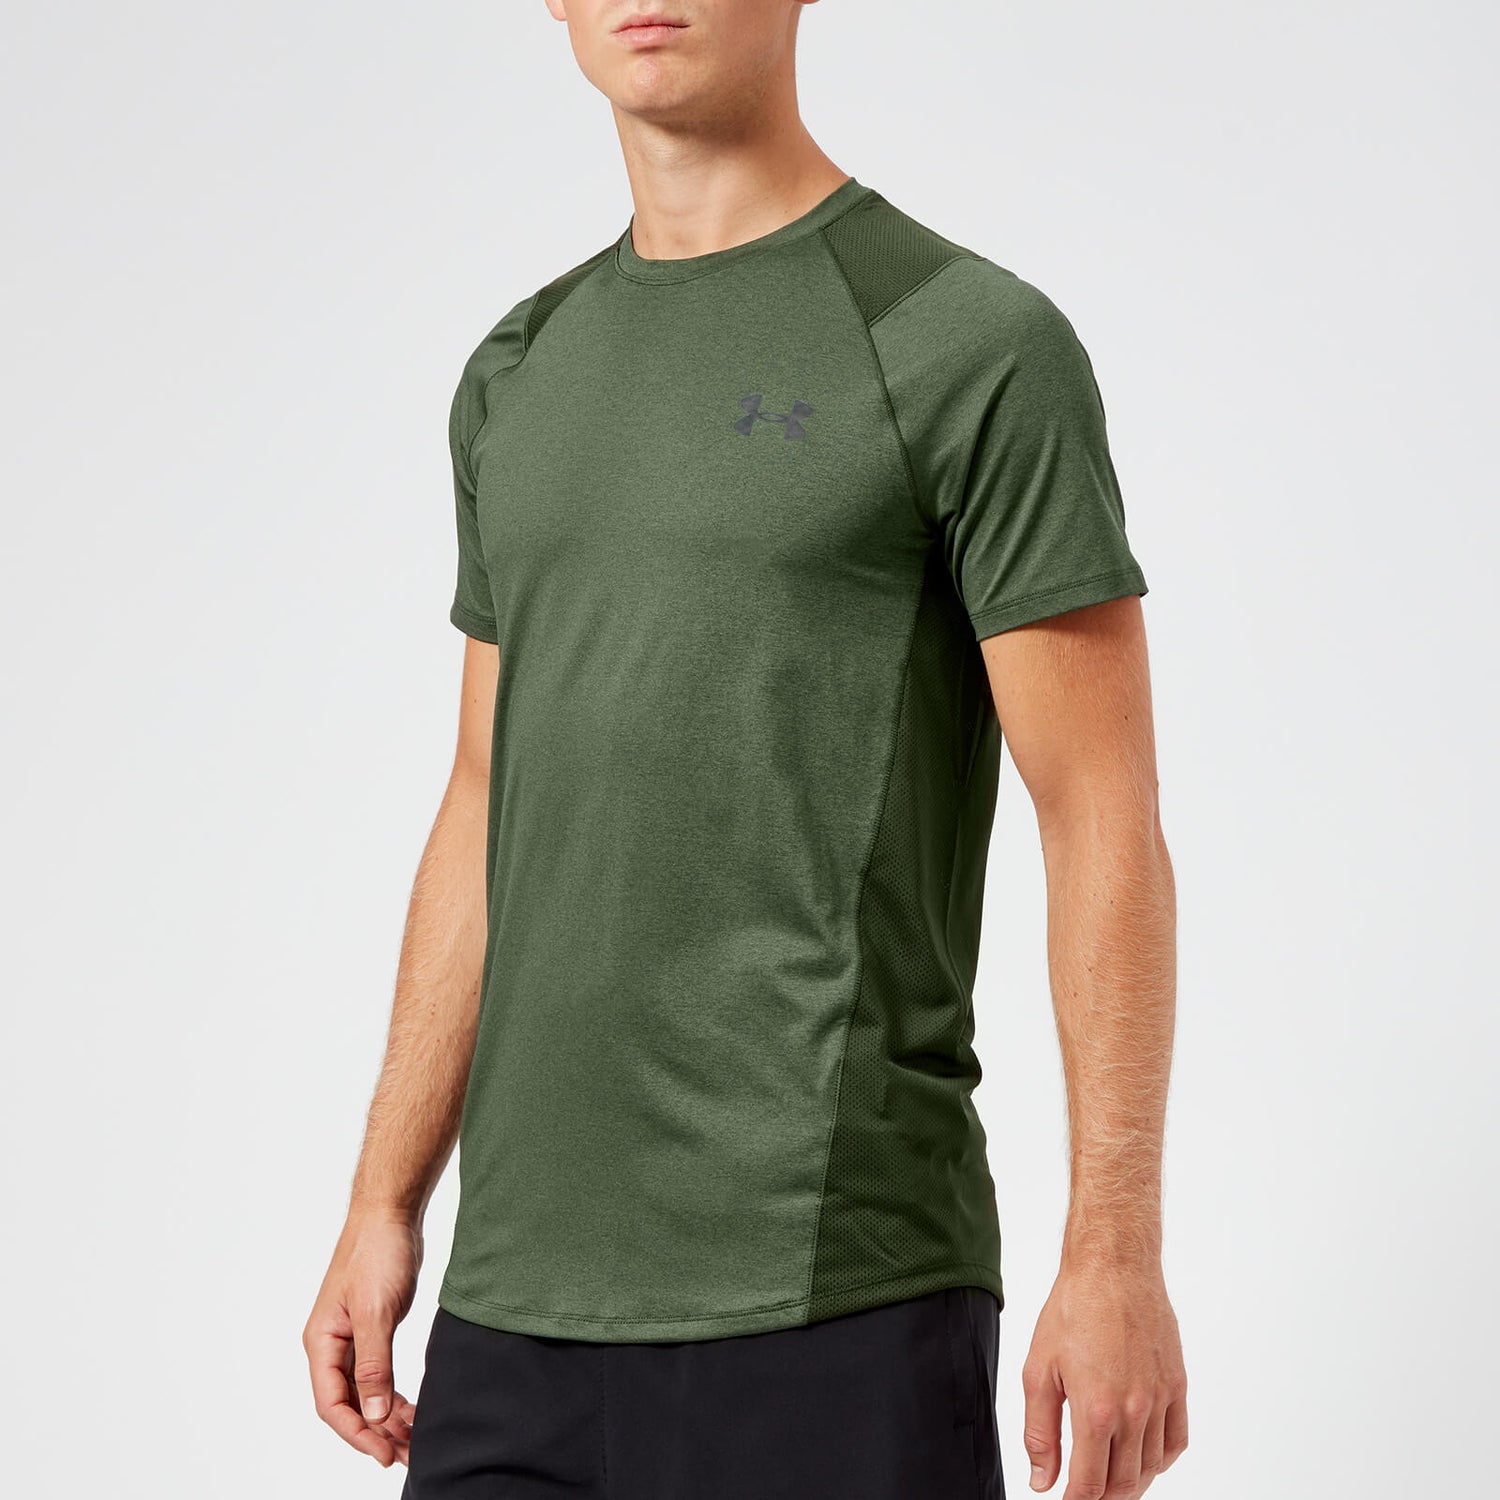 Under Armour Men's MK1 Sleeve T-Shirt - Artillery Green | TheHut.com